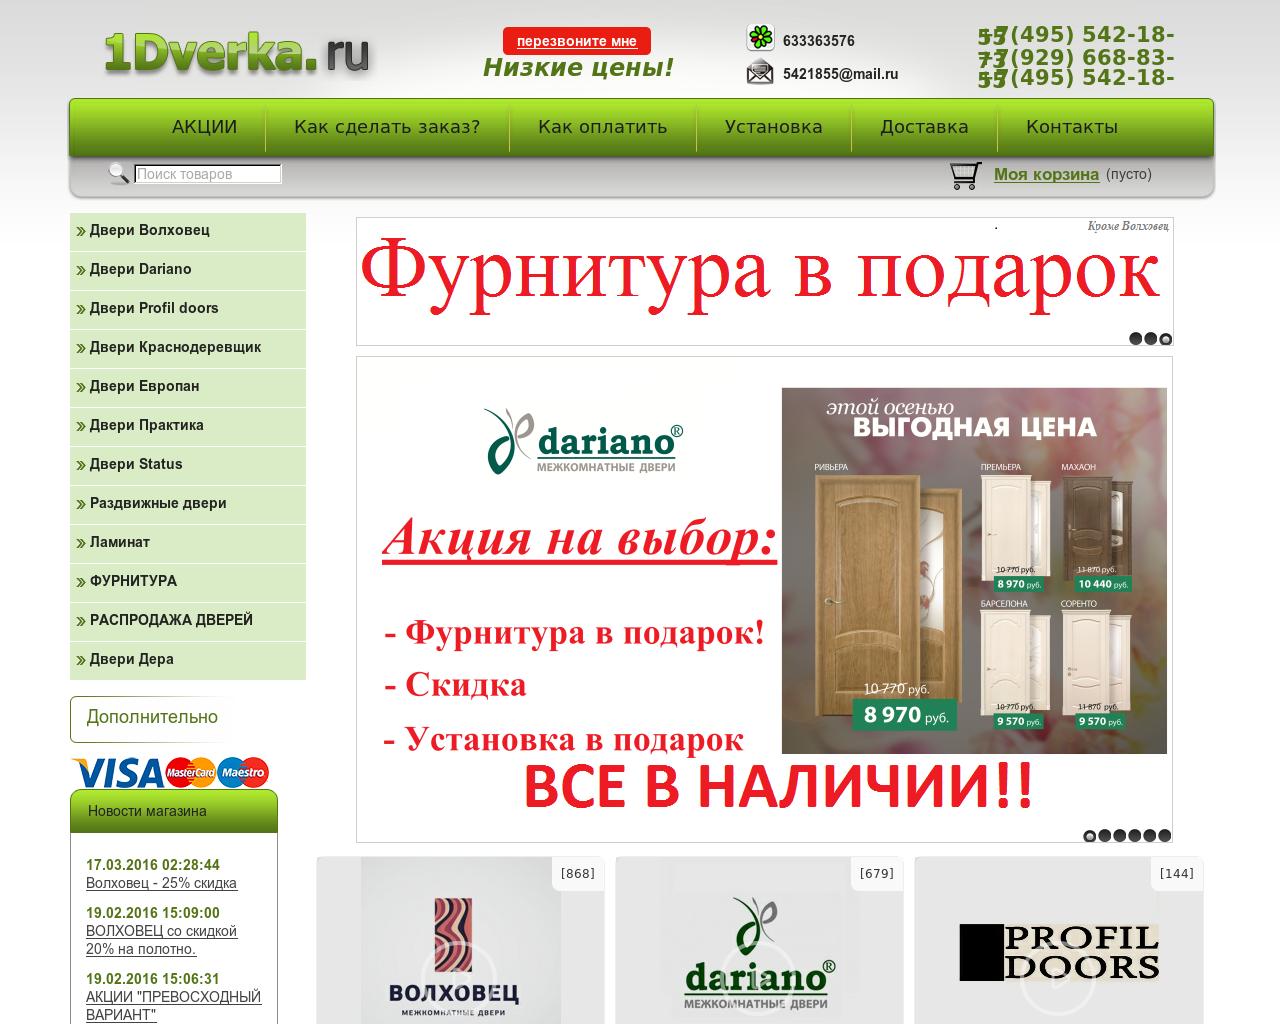 Изображение сайта 1dverka.ru в разрешении 1280x1024